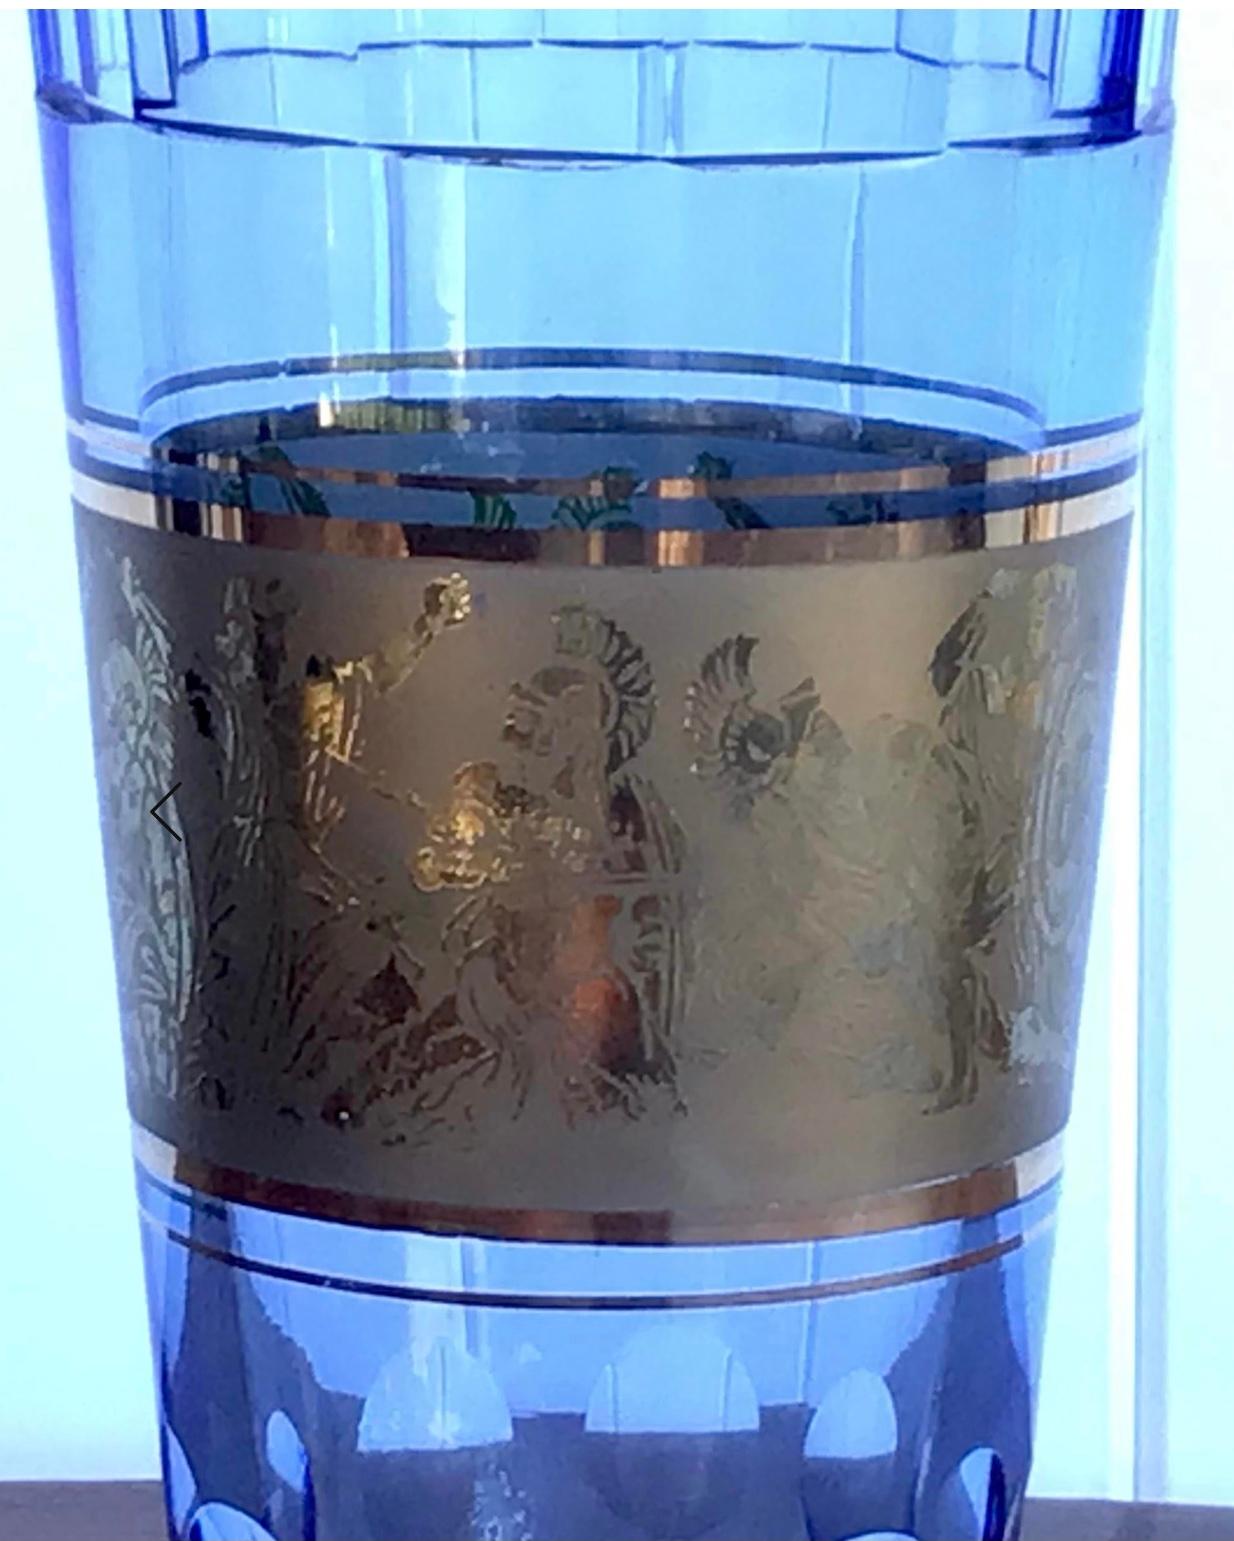 Moser Glass (Tschechoslowakei) Design einer blauen kristallfarbenen Vase mit klassischen Kriegern in Goldrelief. Dieses Stück hat weder ein Label noch eine Signatur, aber es könnte einer der Entwürfe von Josef Hoffmann aus den 1920er Jahren sein.